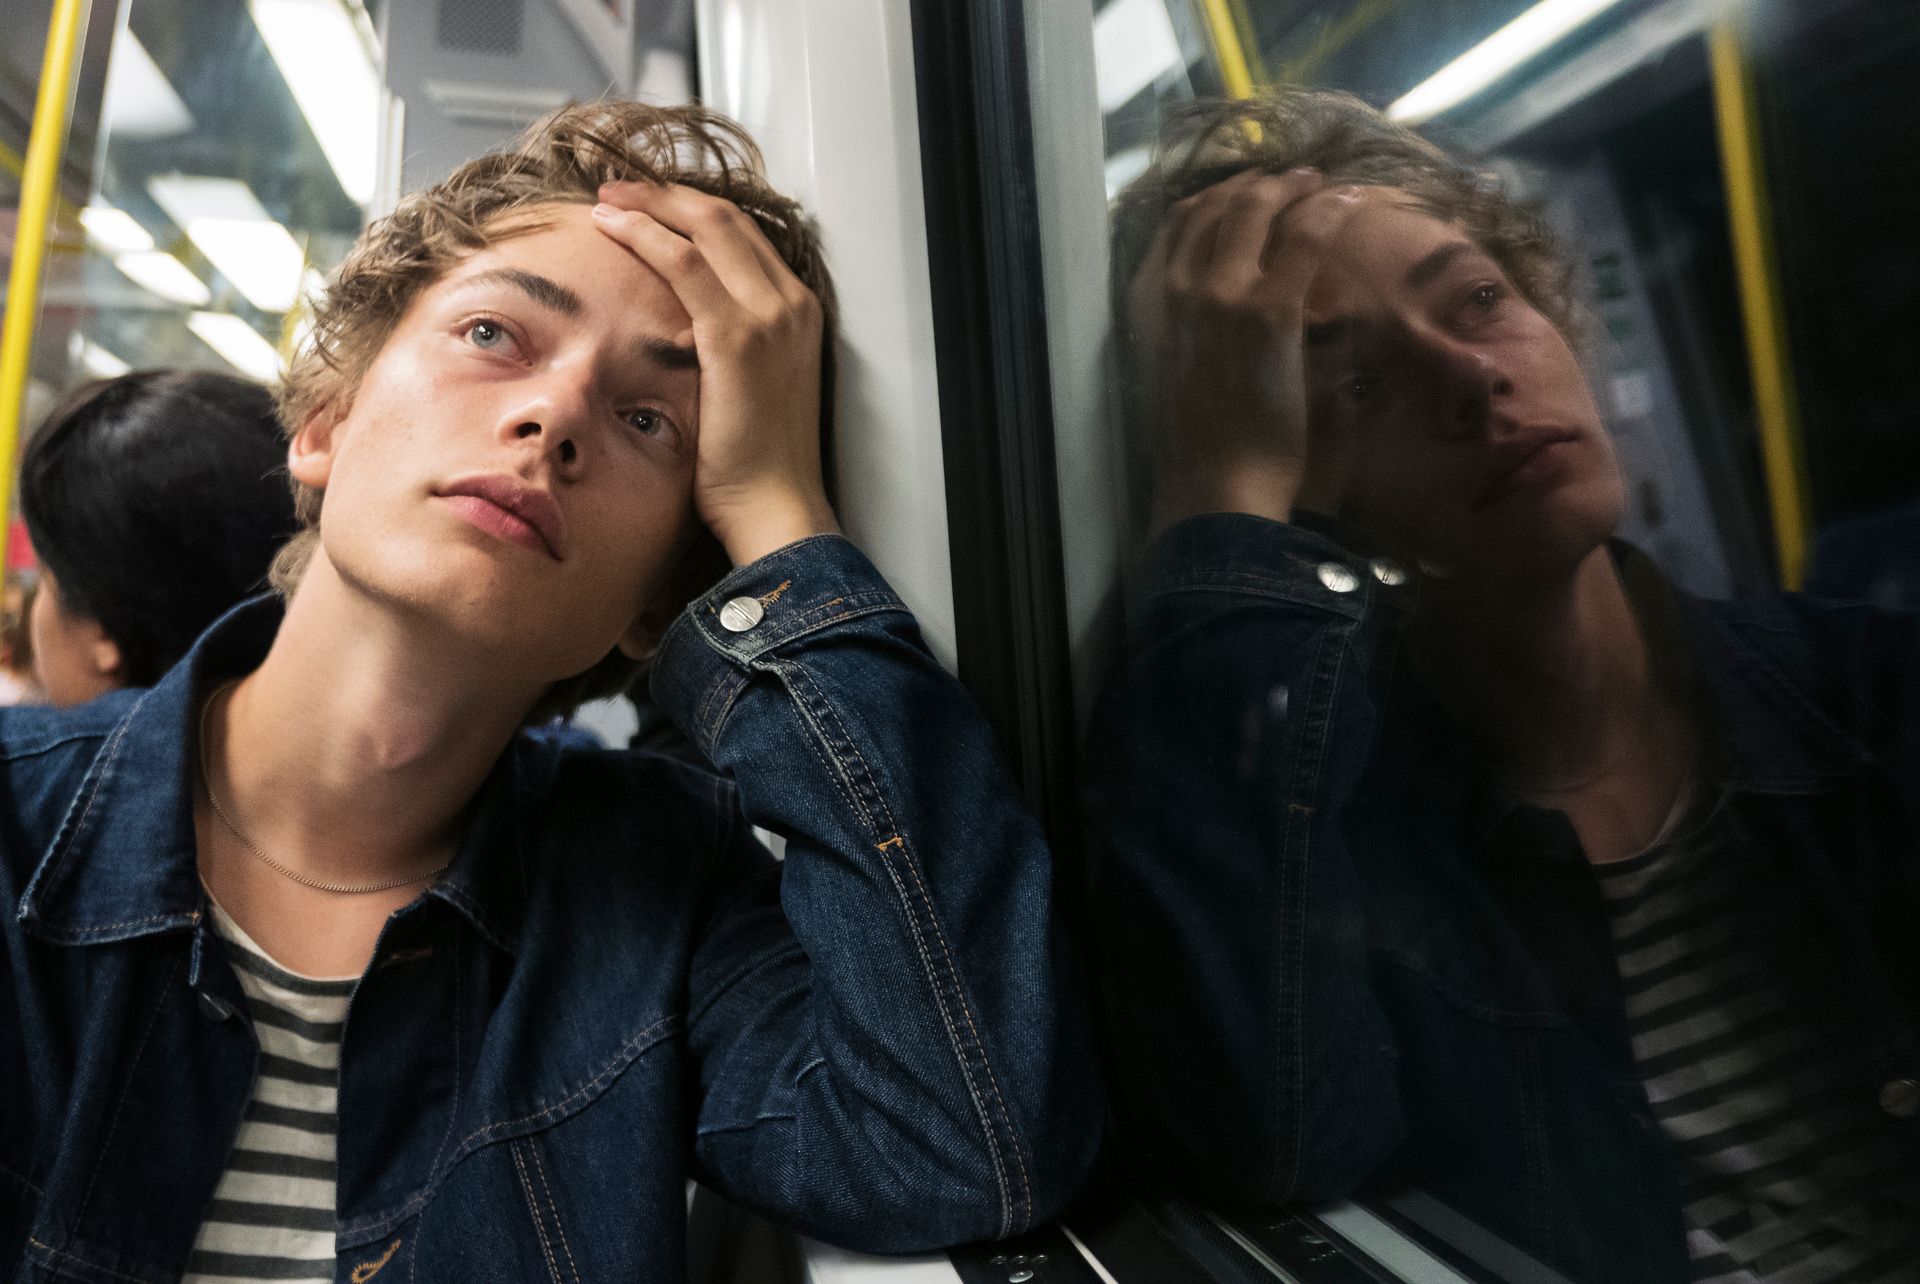 A teenage boy is sitting on a subway.